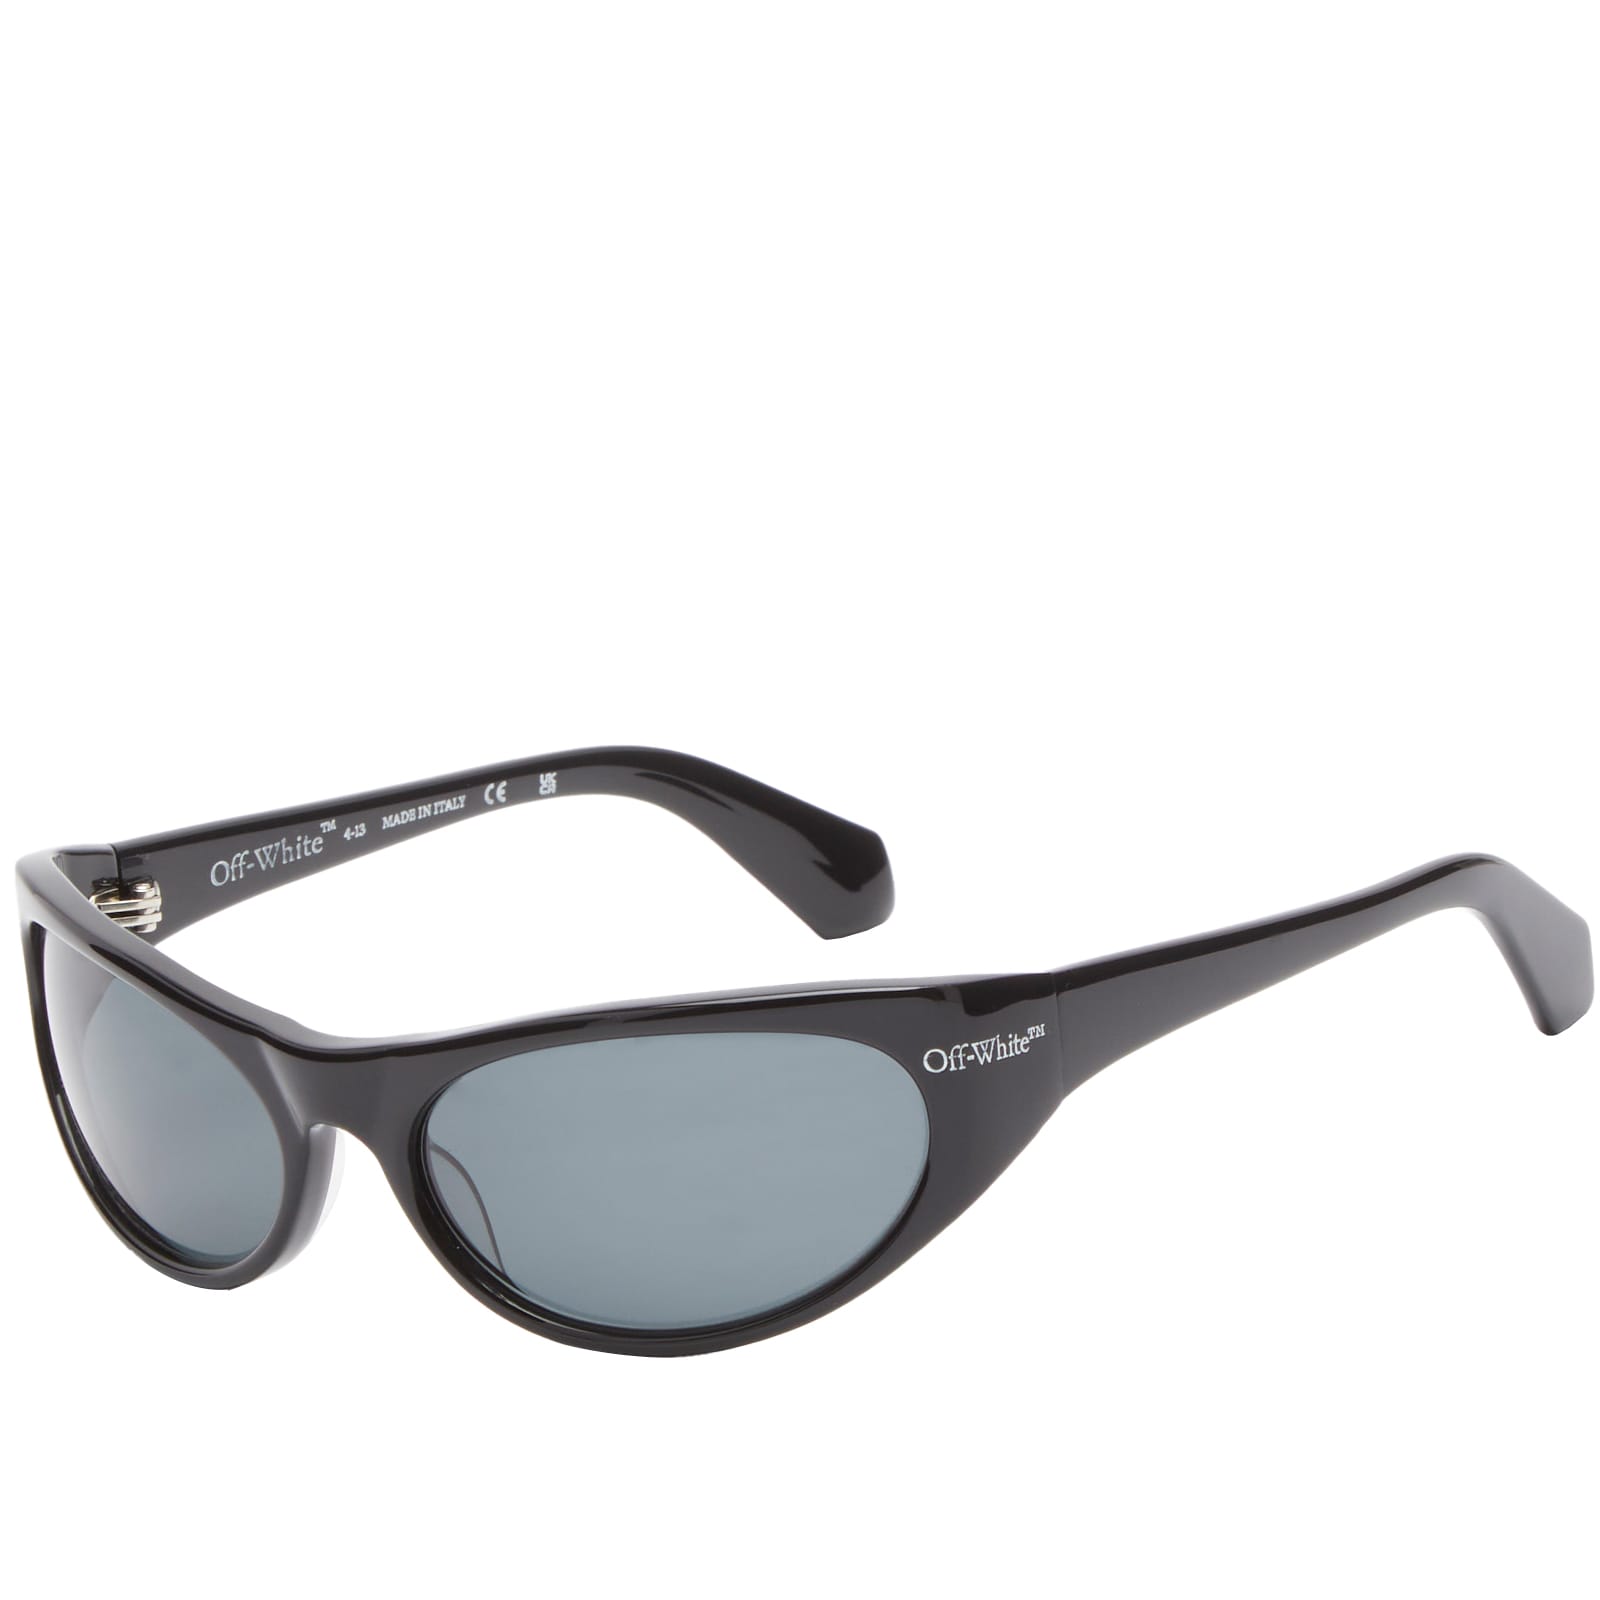 мужские солнцезащитные очки off white черные oeri094f23pla0011007 черный Солнцезащитные очки Off-White Napoli, черный